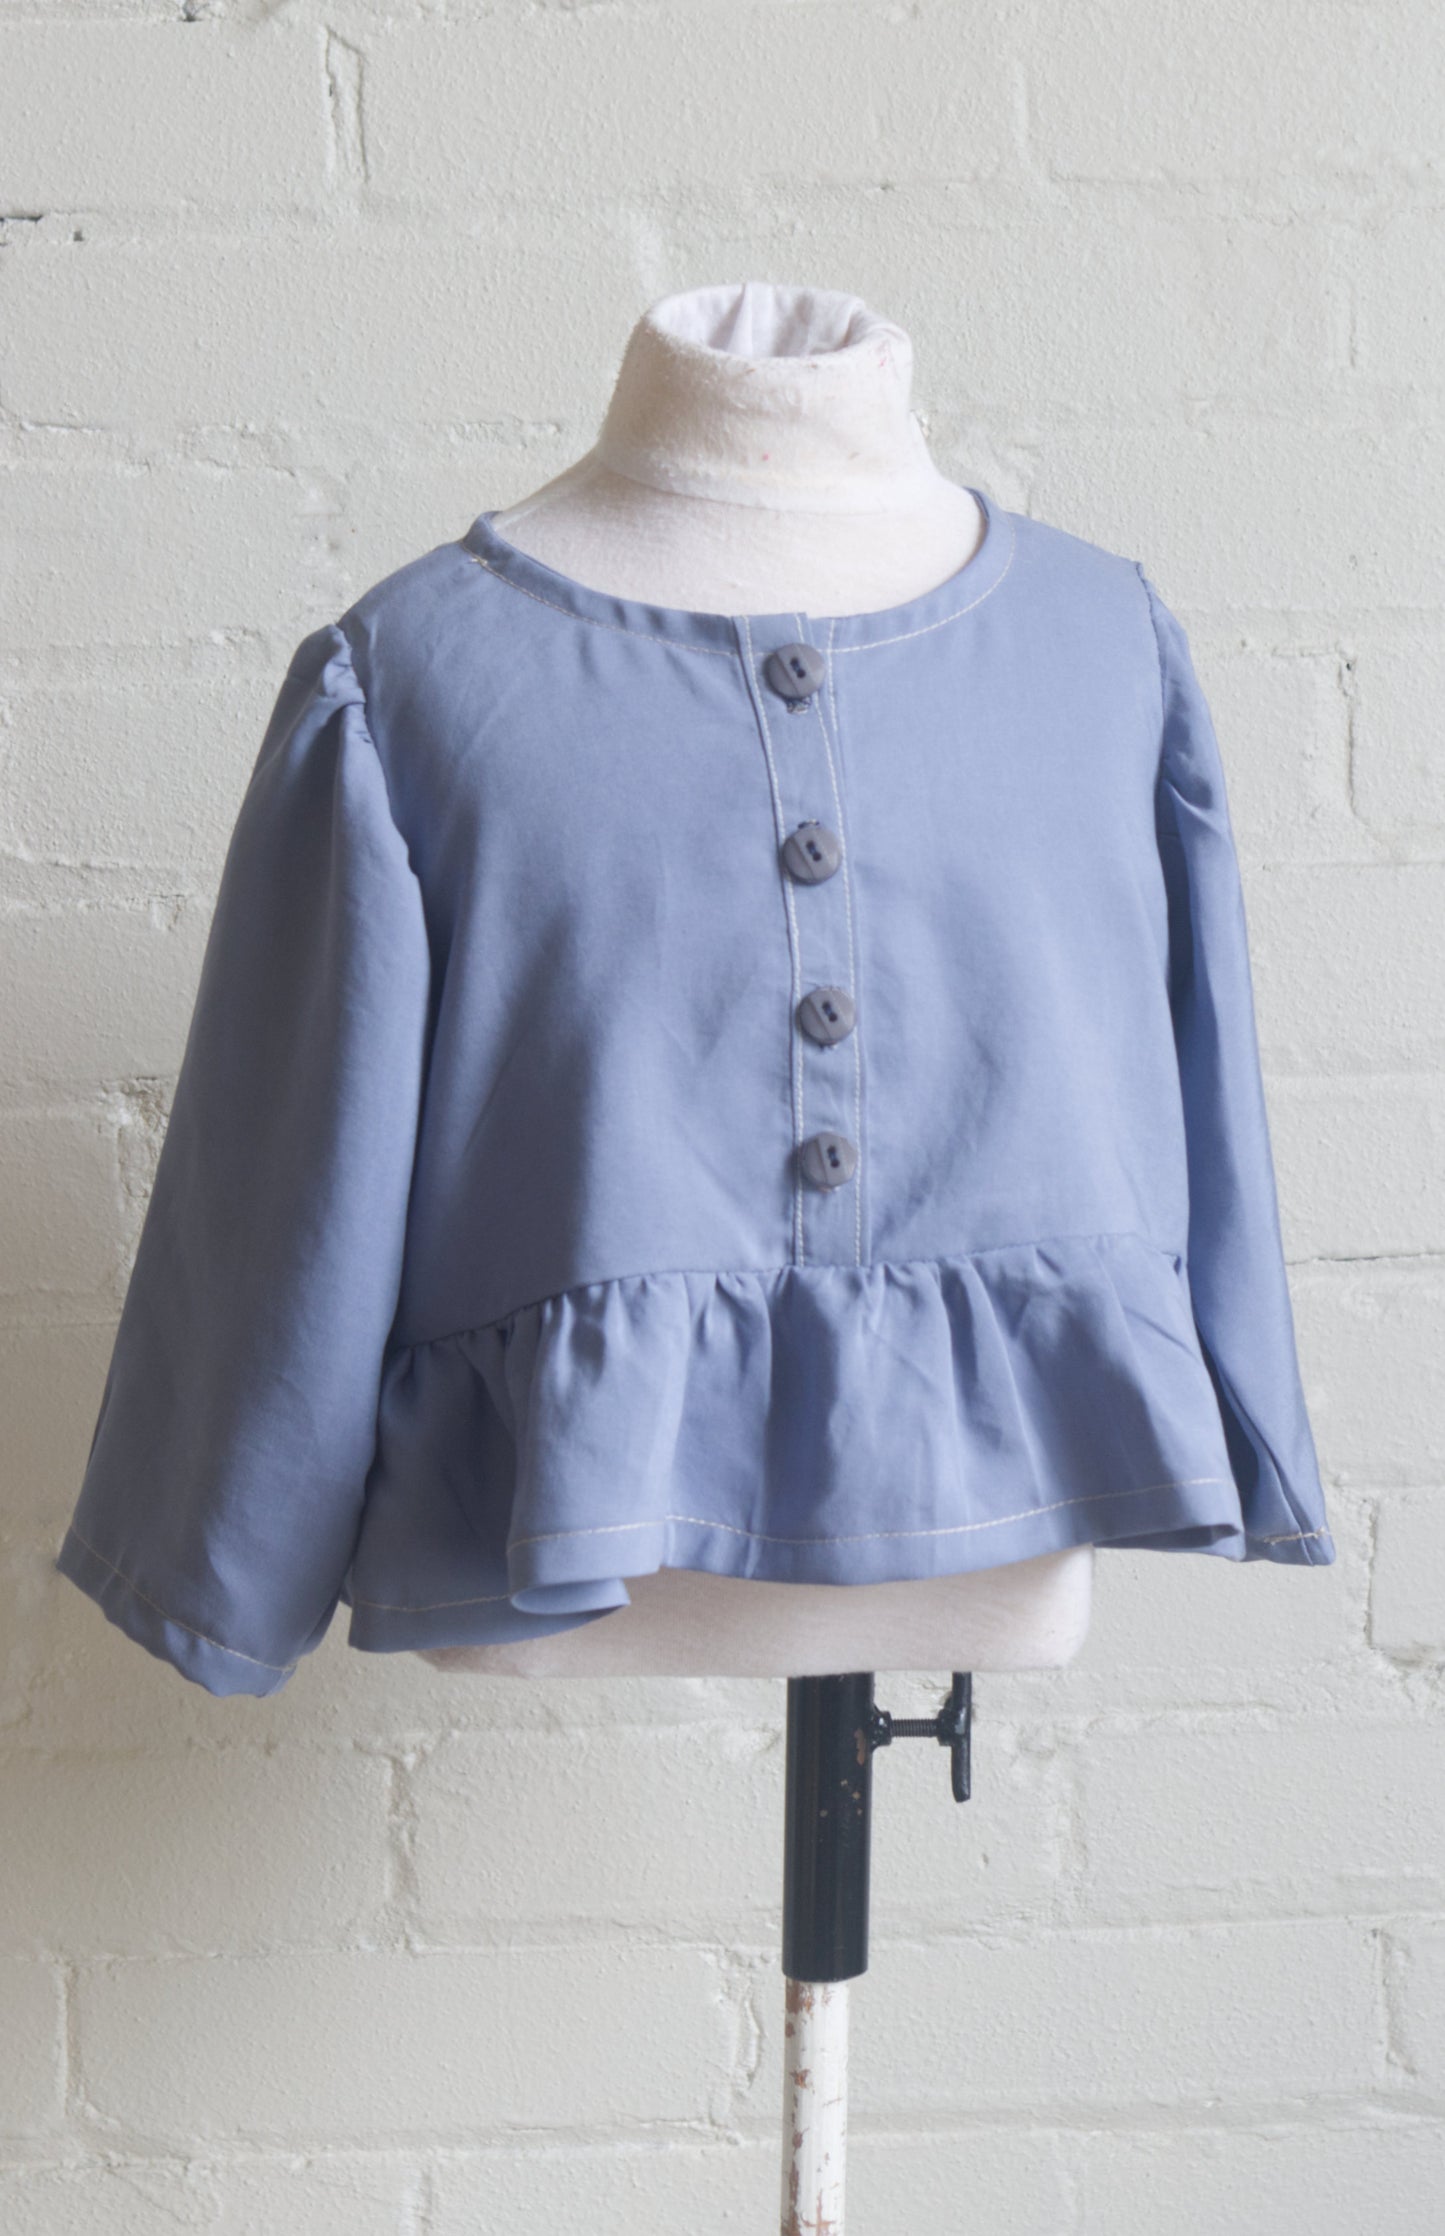 Peplum Shirt Sewing Pattern